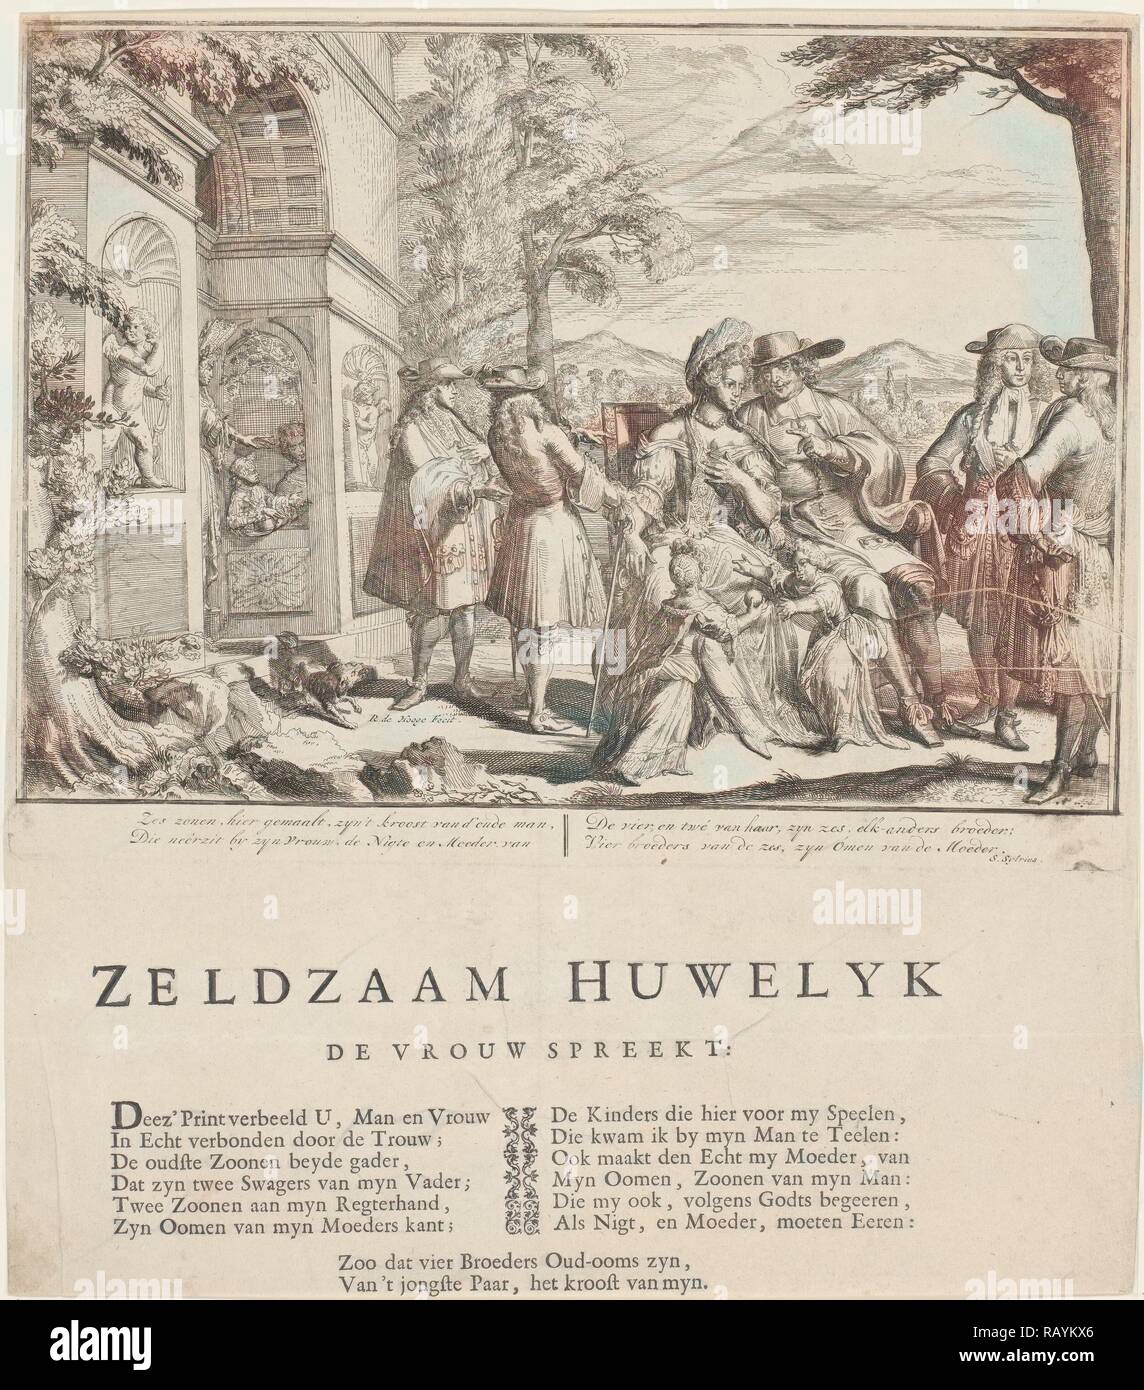 Le mariage compliqué, Romeyn de Hooghe, Samuel Sylvius, P. van Torenburg, 1698. Repensé par Gibon. L'art classique repensé Banque D'Images